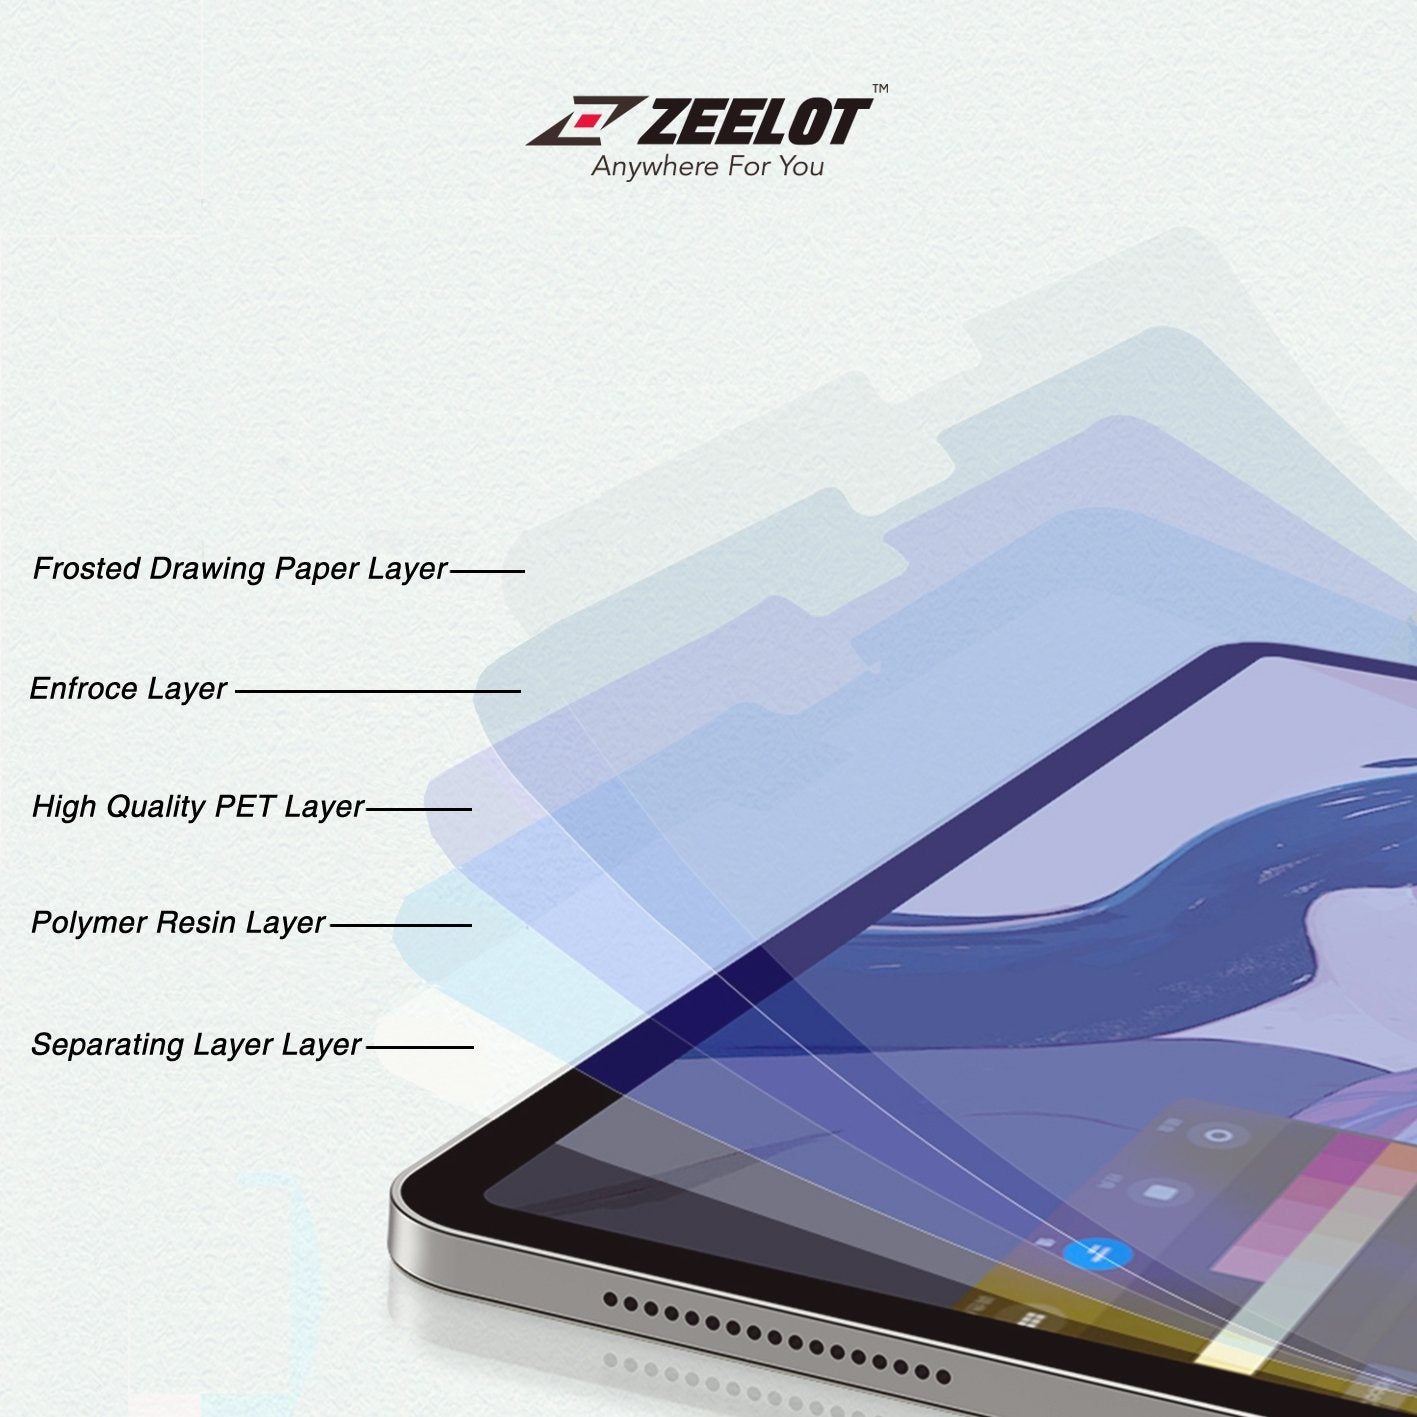 ZEELOT Paper Like Screen Protector for iPad 10.2" (2020/2019) Default Zeelot 